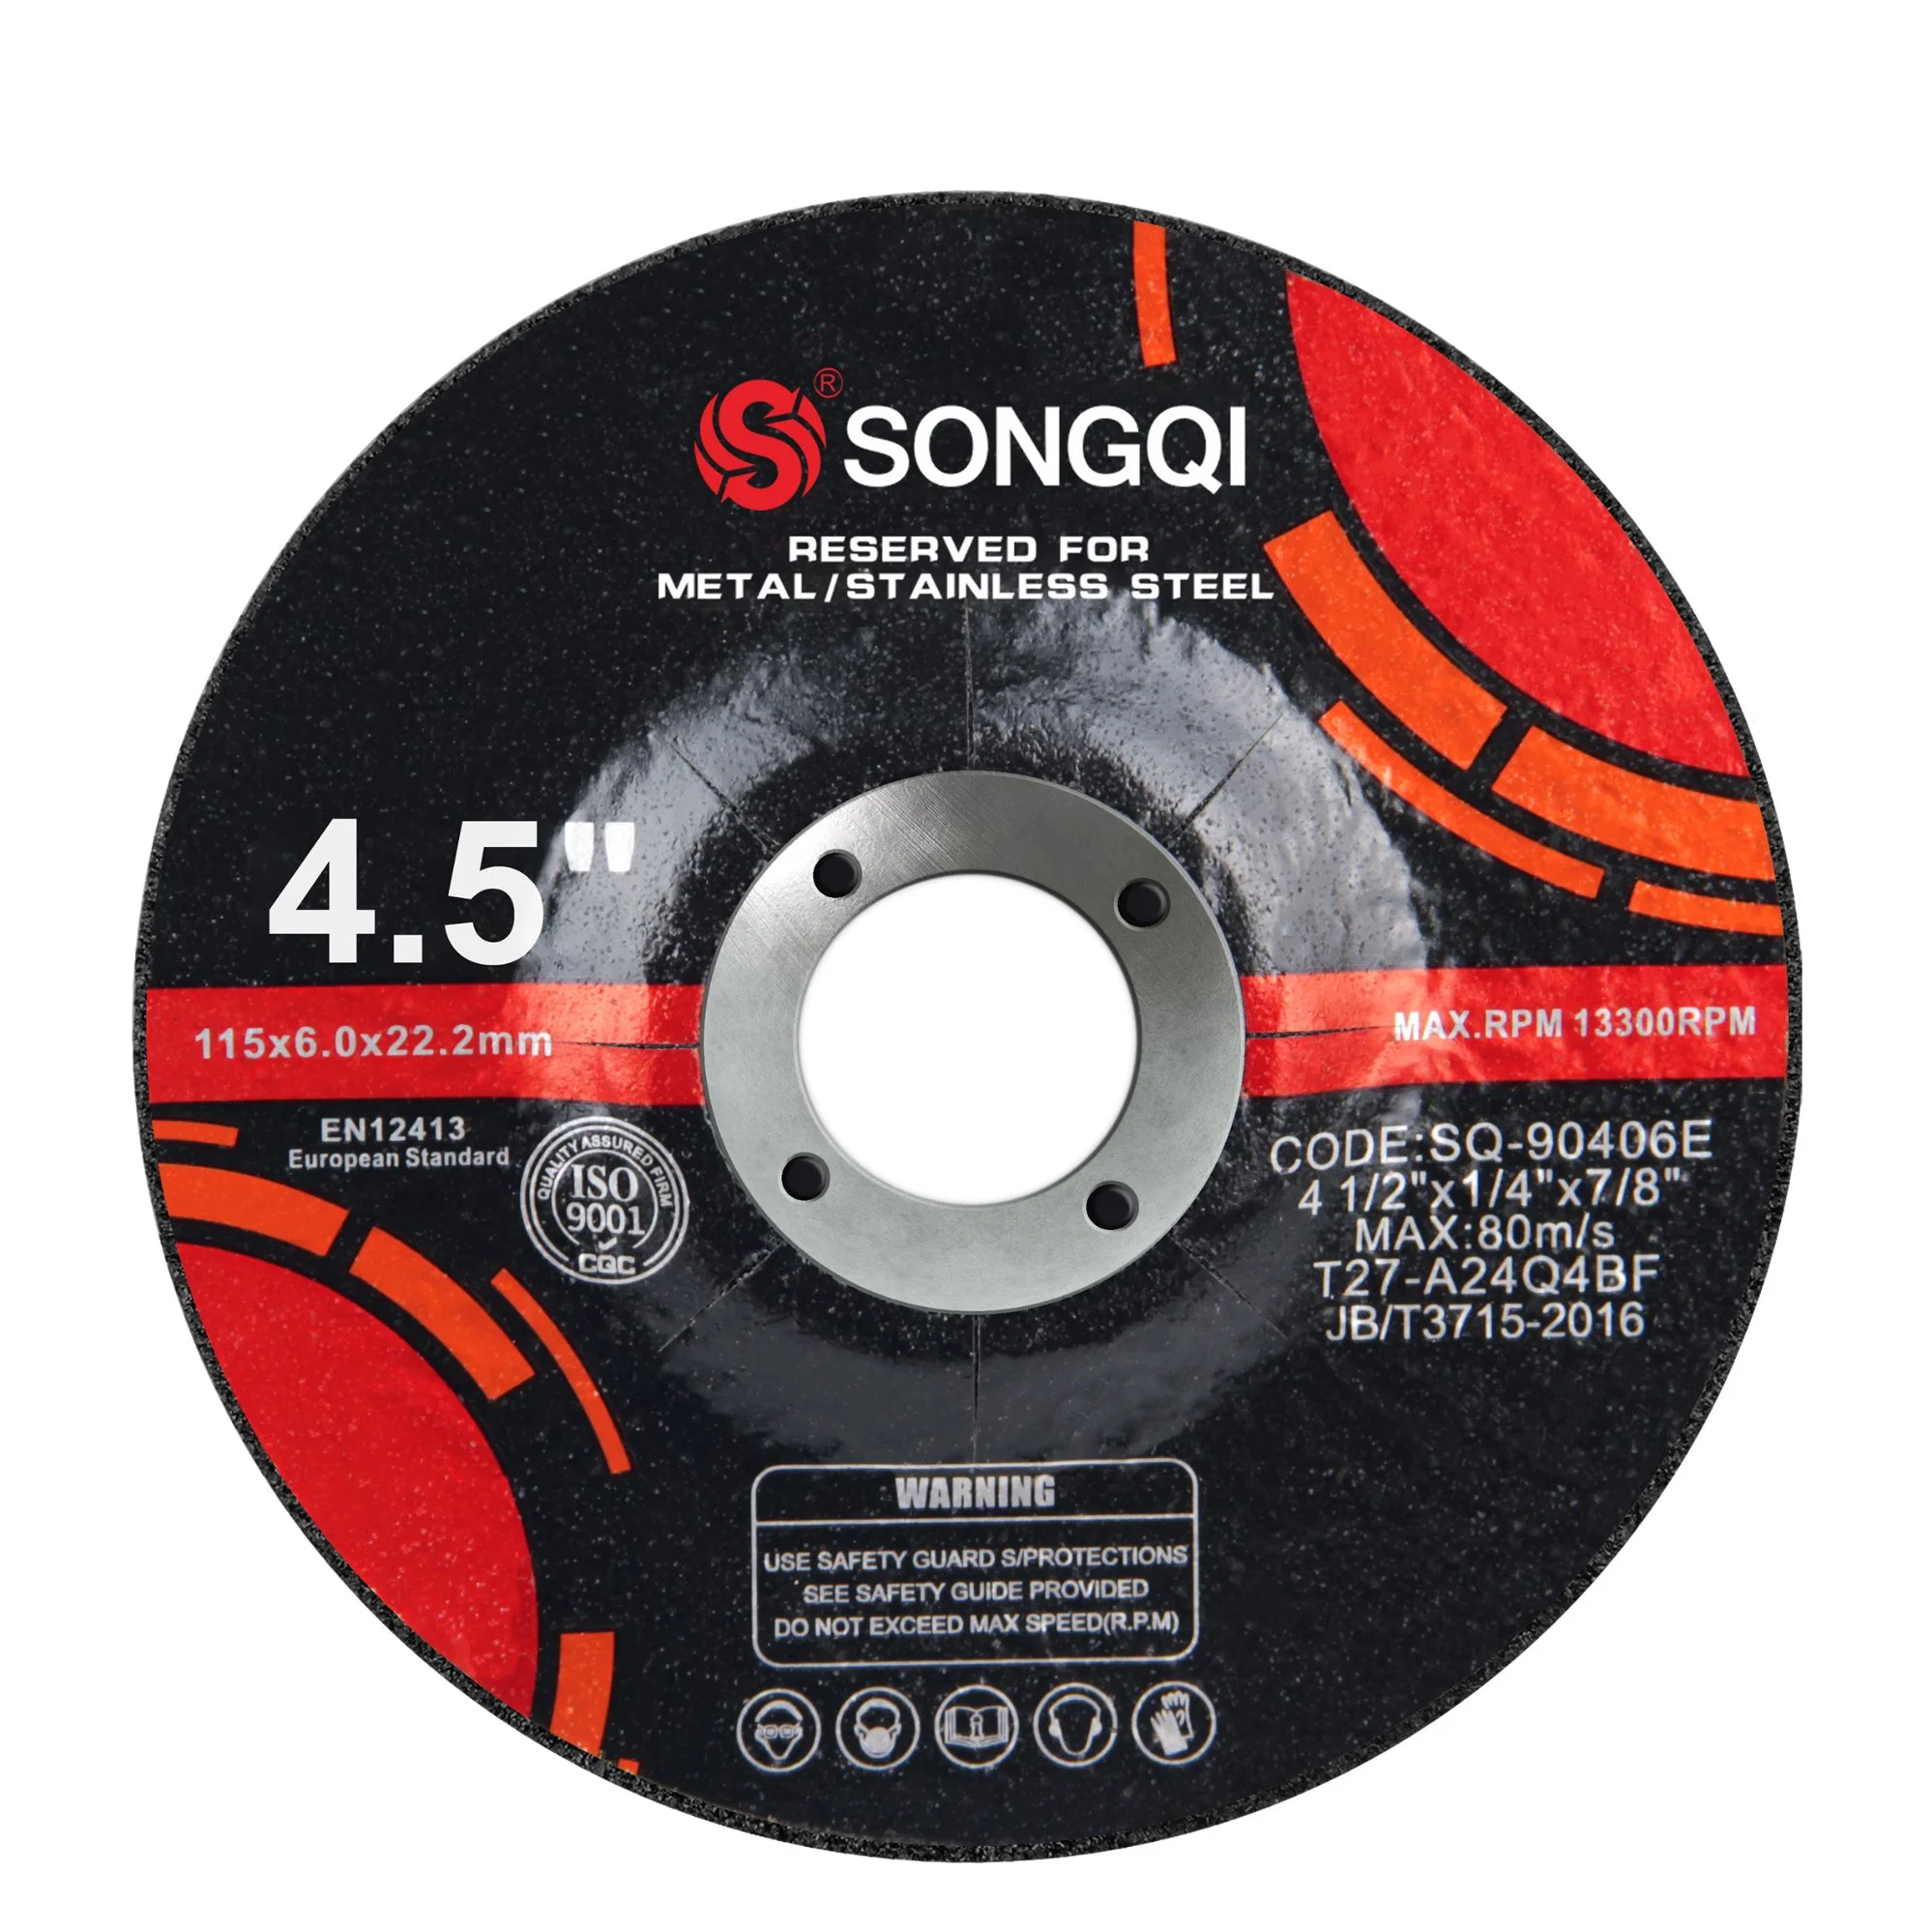 Songqi 4.5inch 115mm Metal Grinding Disc for Metal &Steel Grinding Wheel